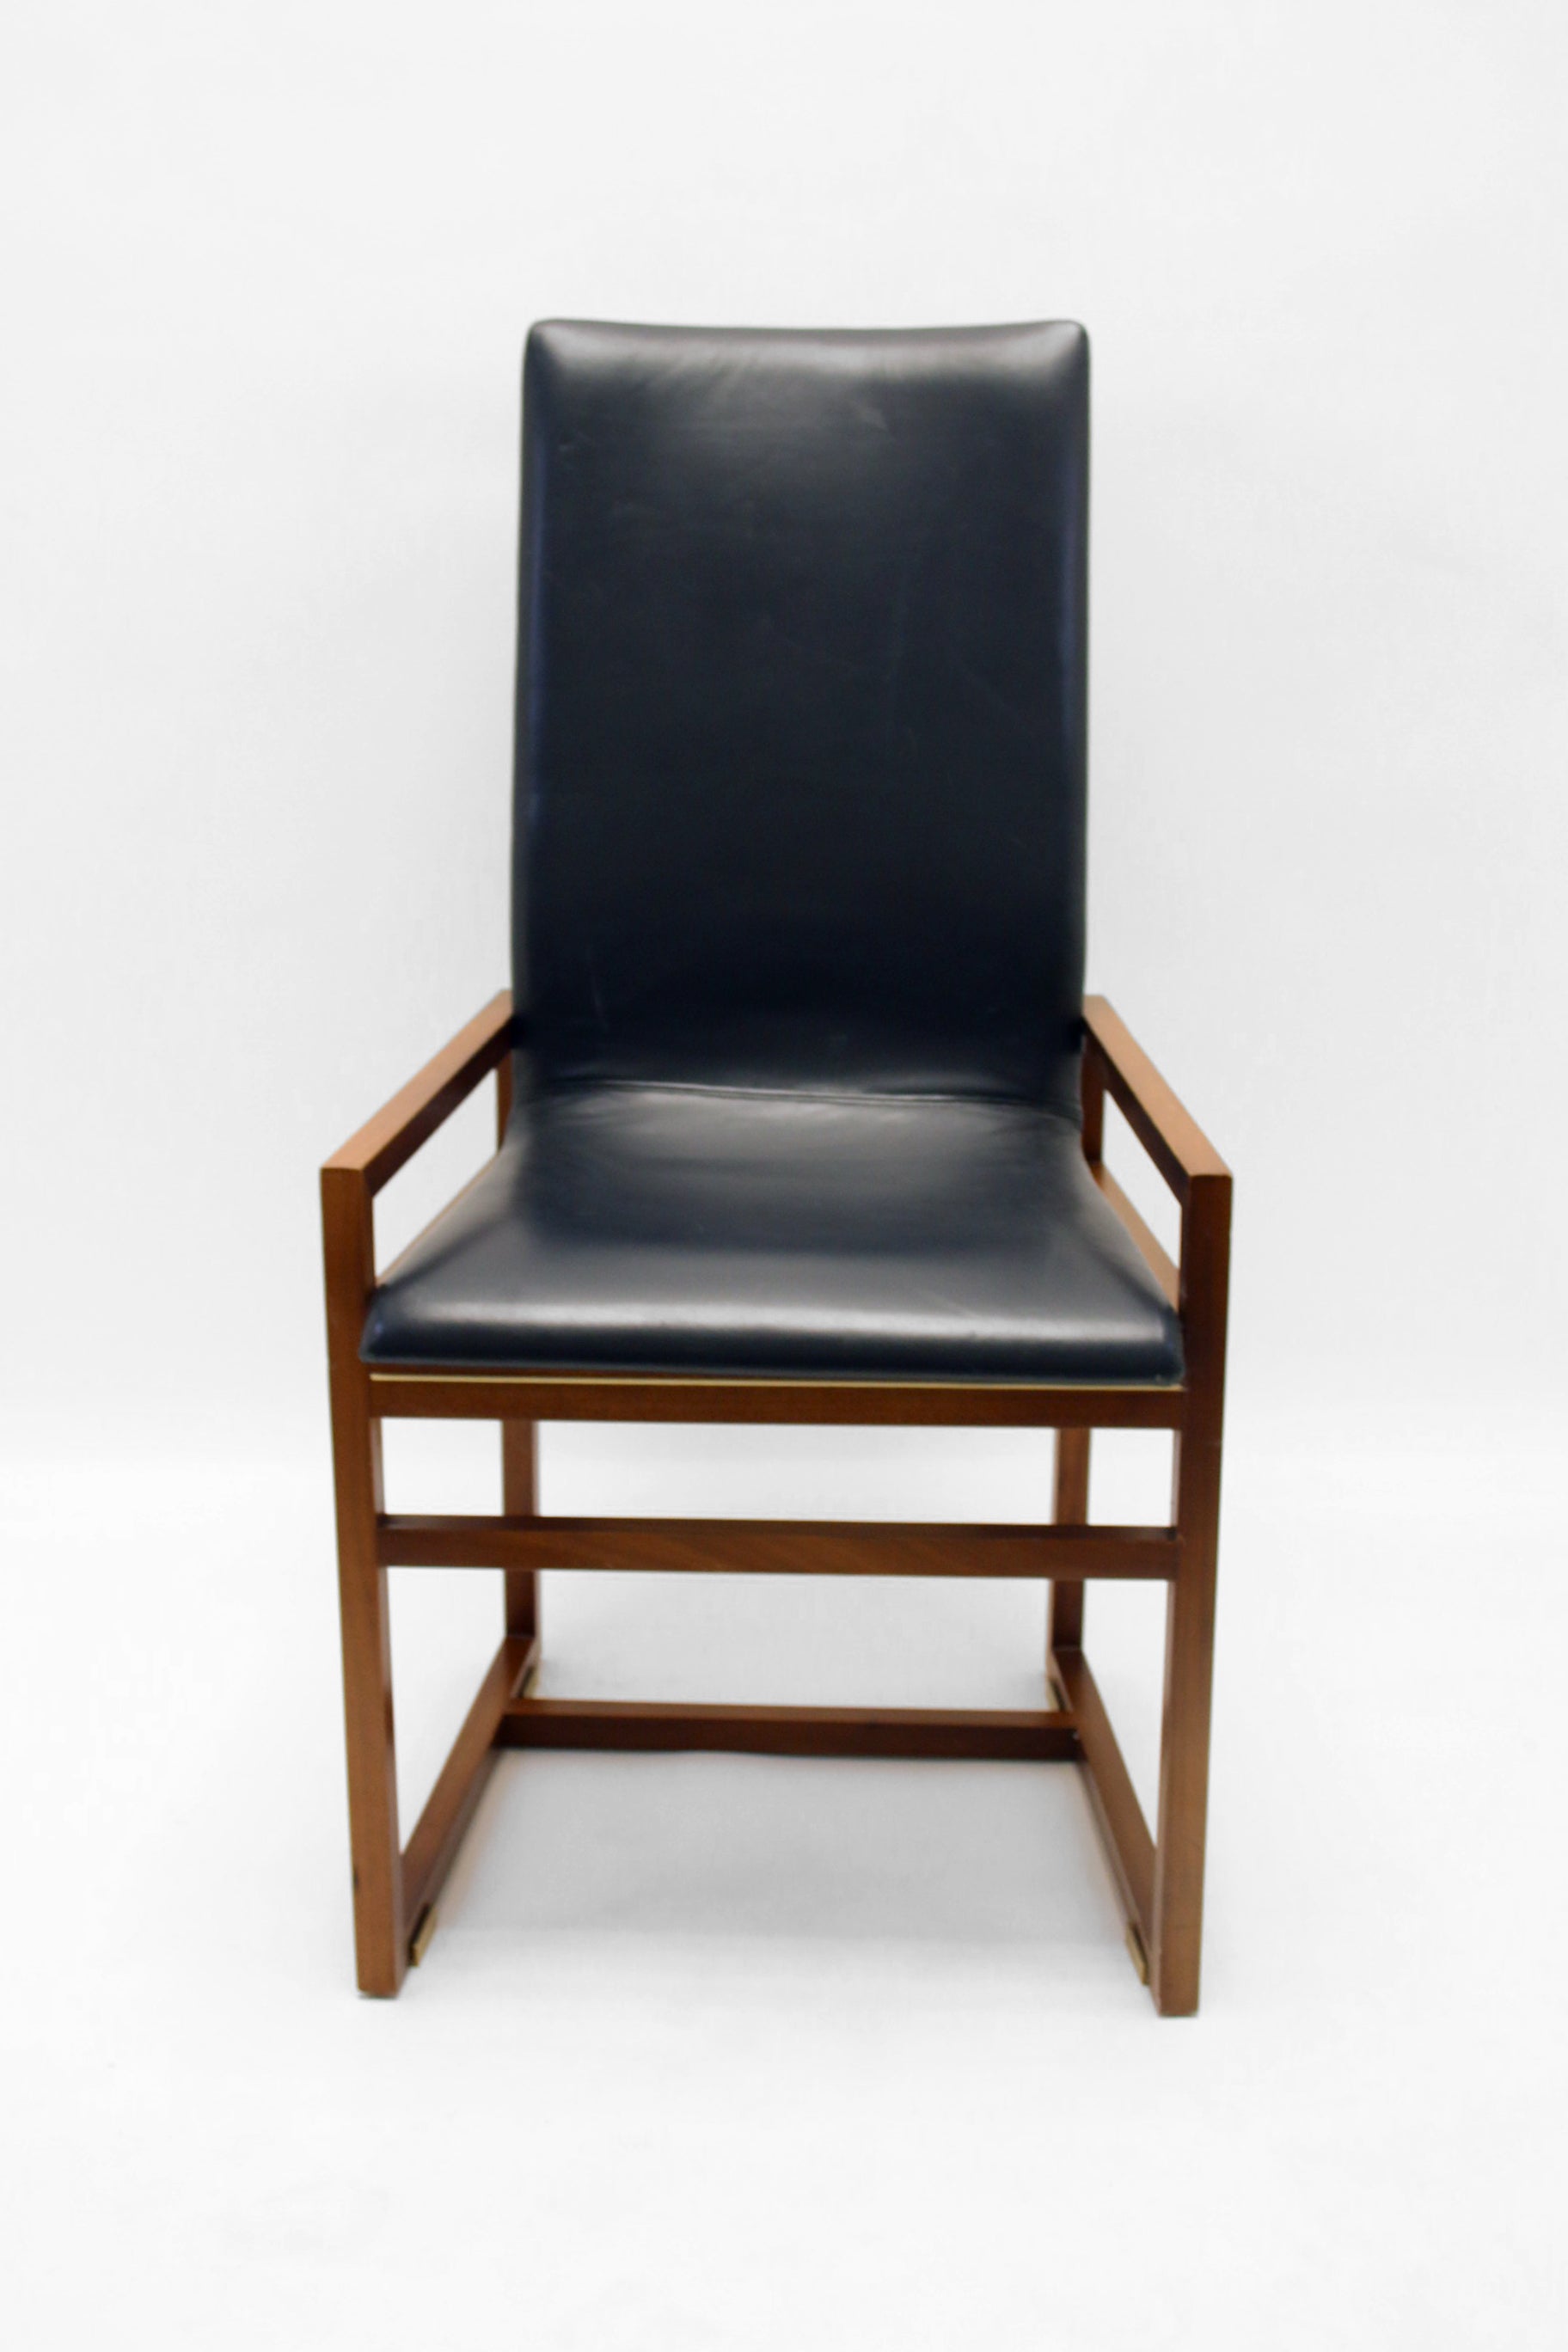 Designer fauteuil zwart blauw voorkant